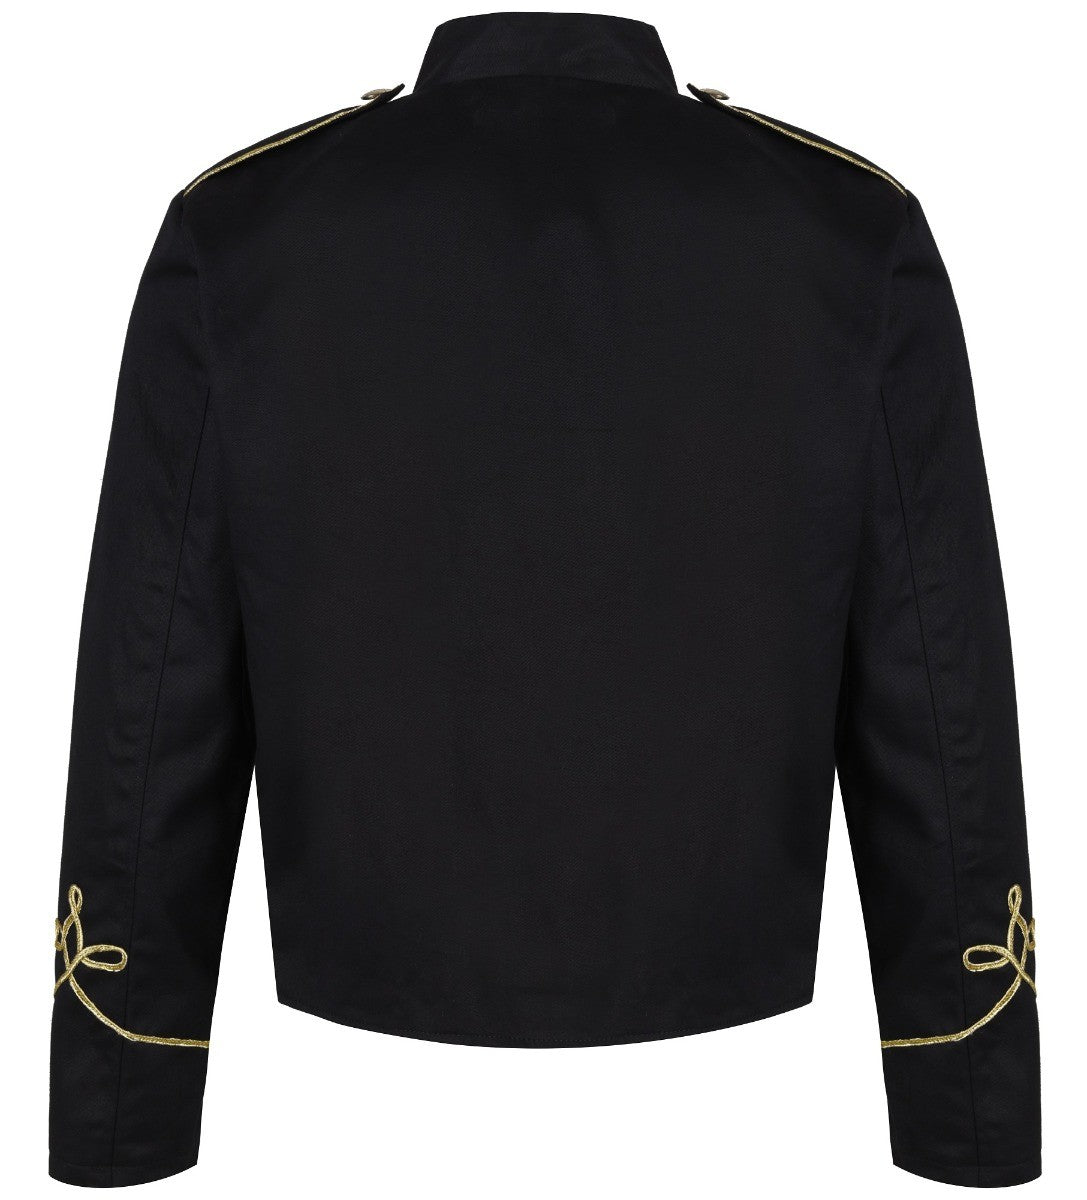 Ro Rox Men's Napoleonic Military Parade Jacket